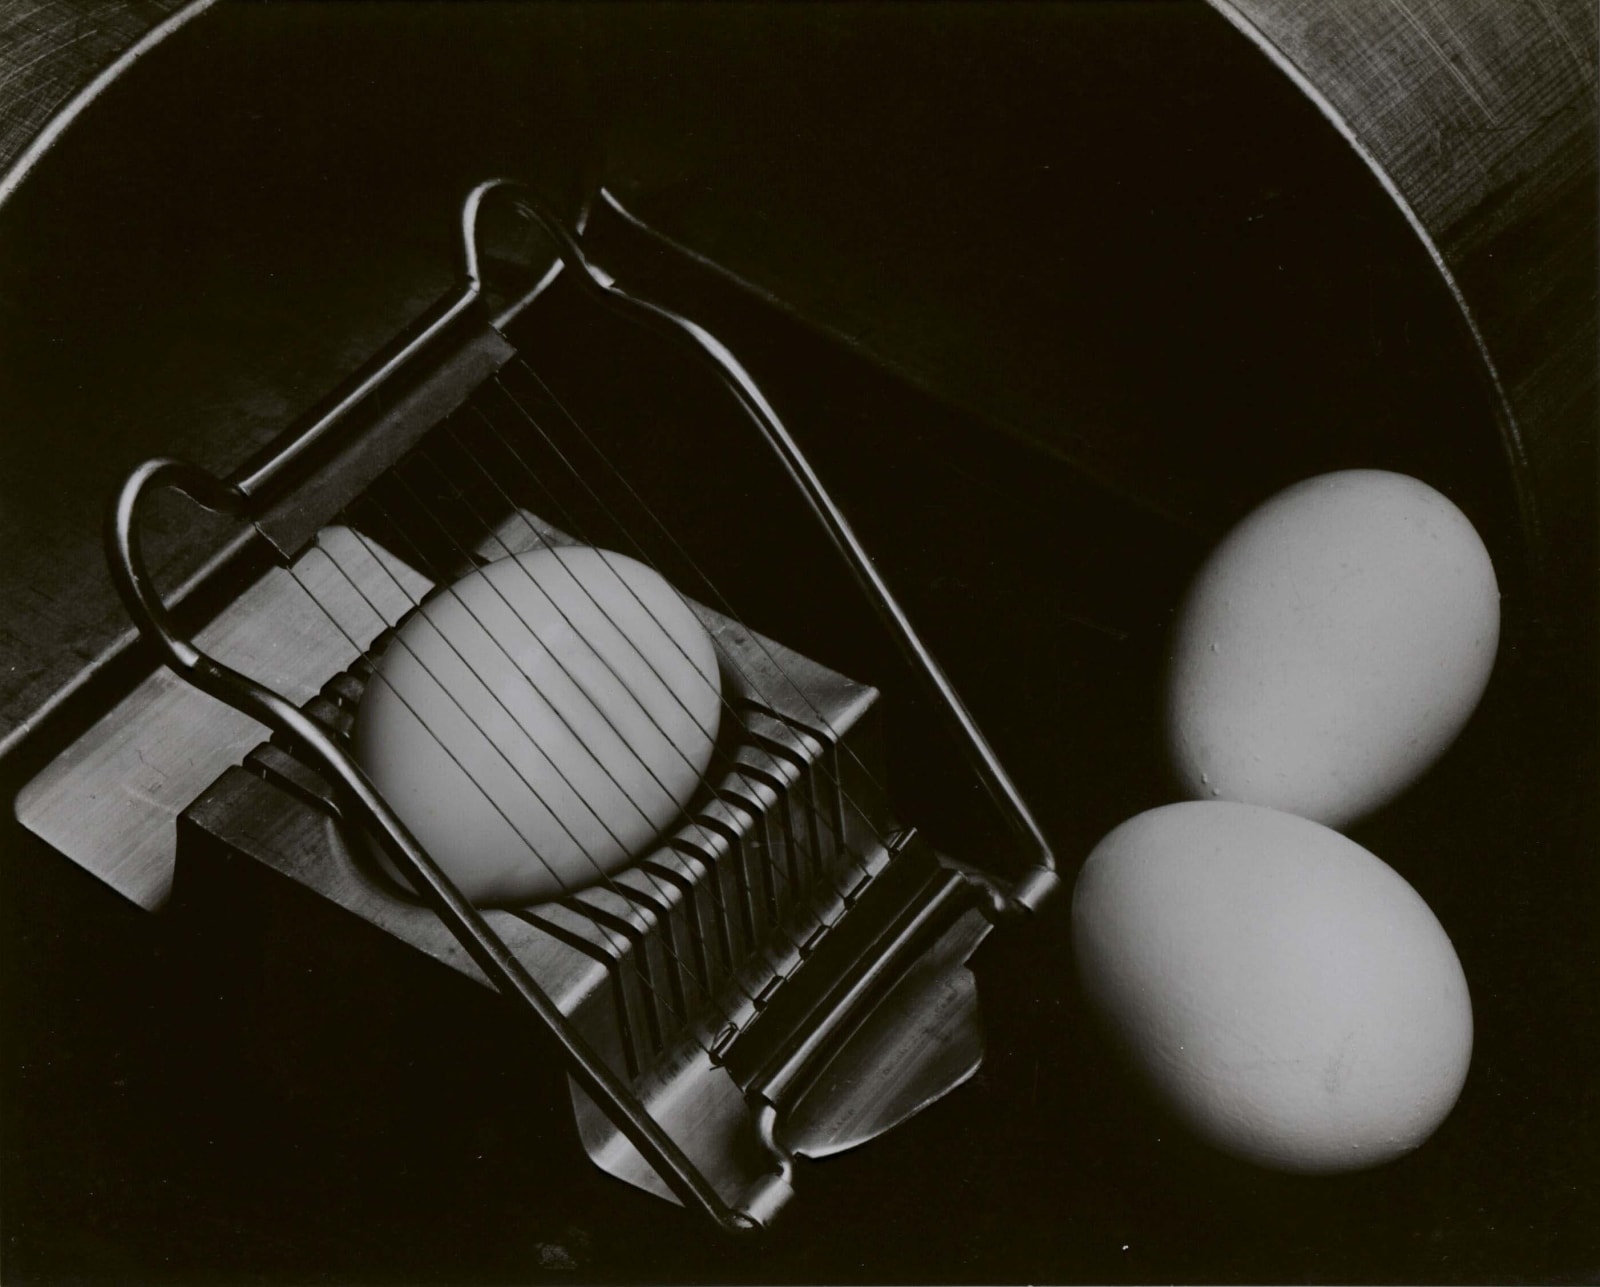 Edward Weston, Eggs and Slicer, 1930